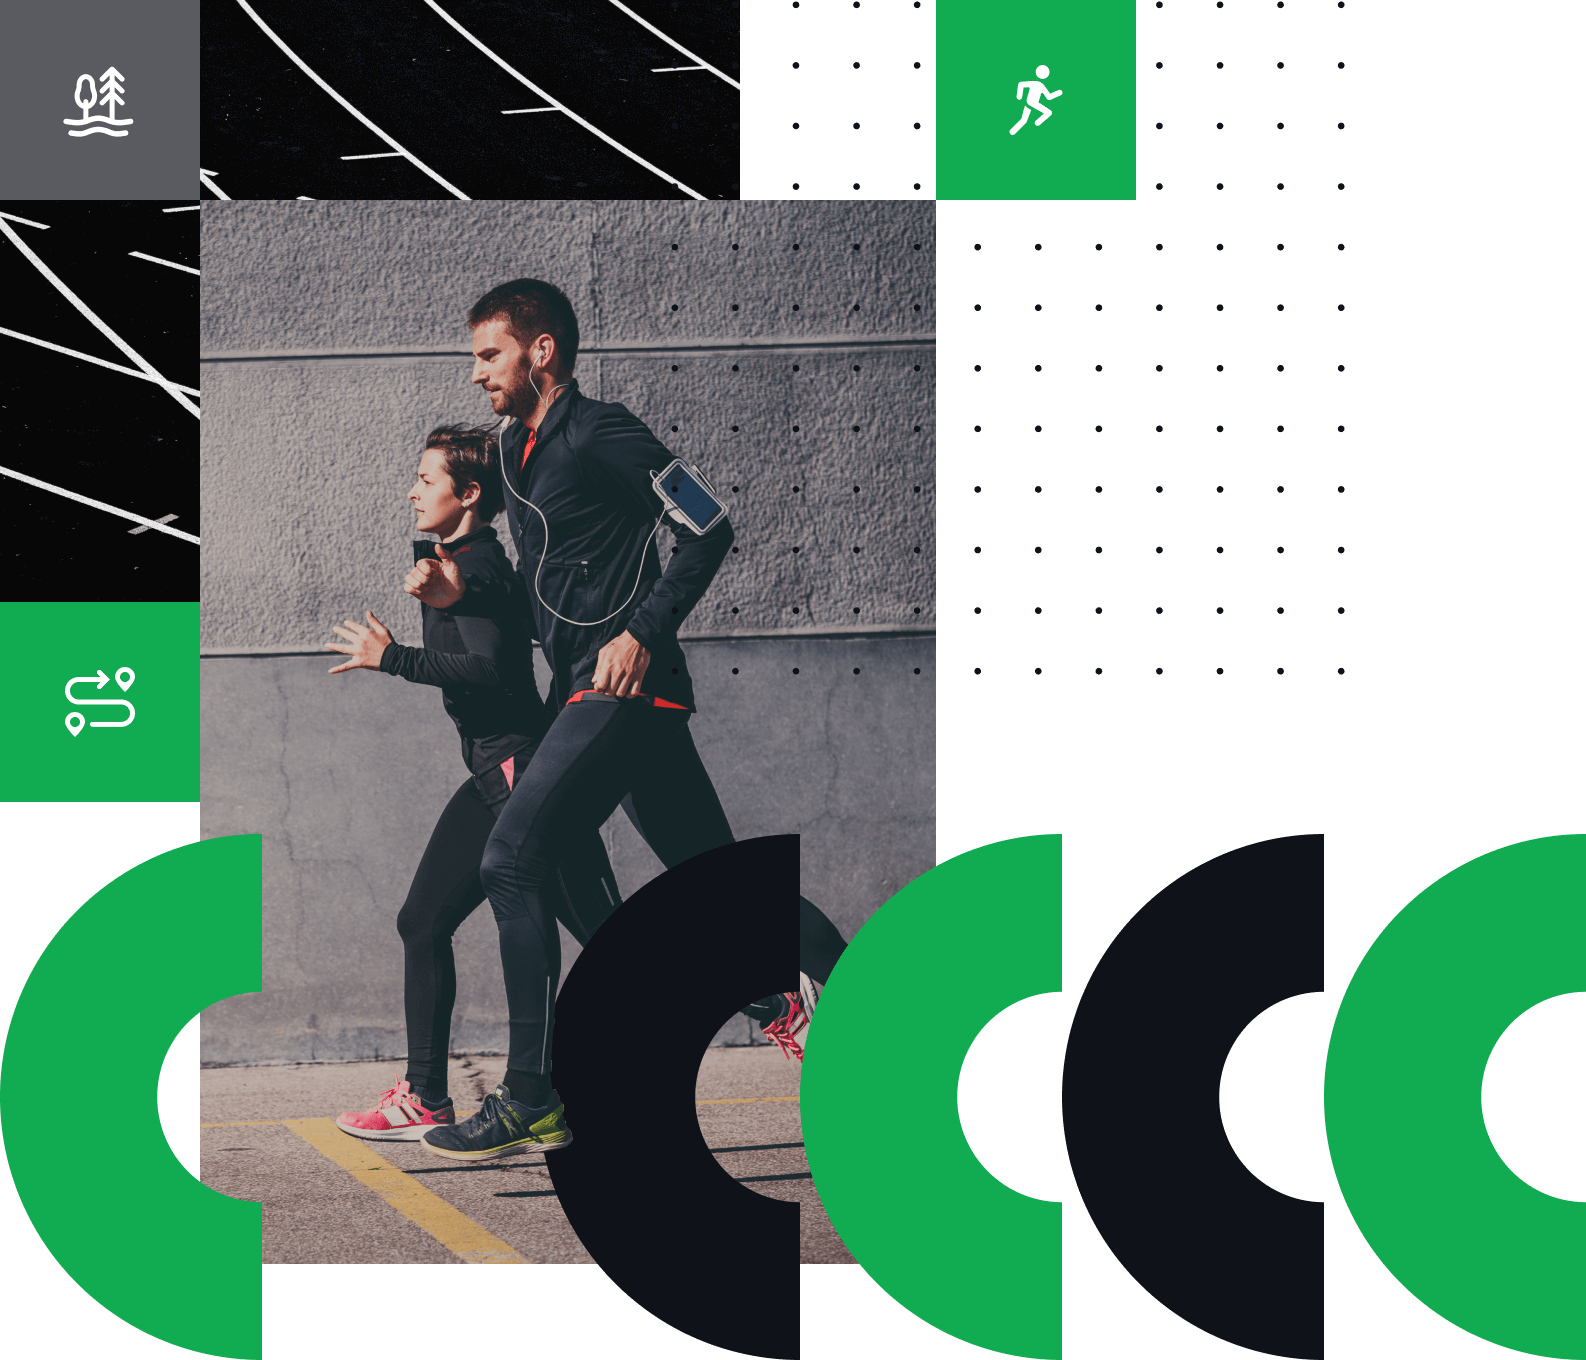 2 utilisateurs de l'application joggo en train de courir